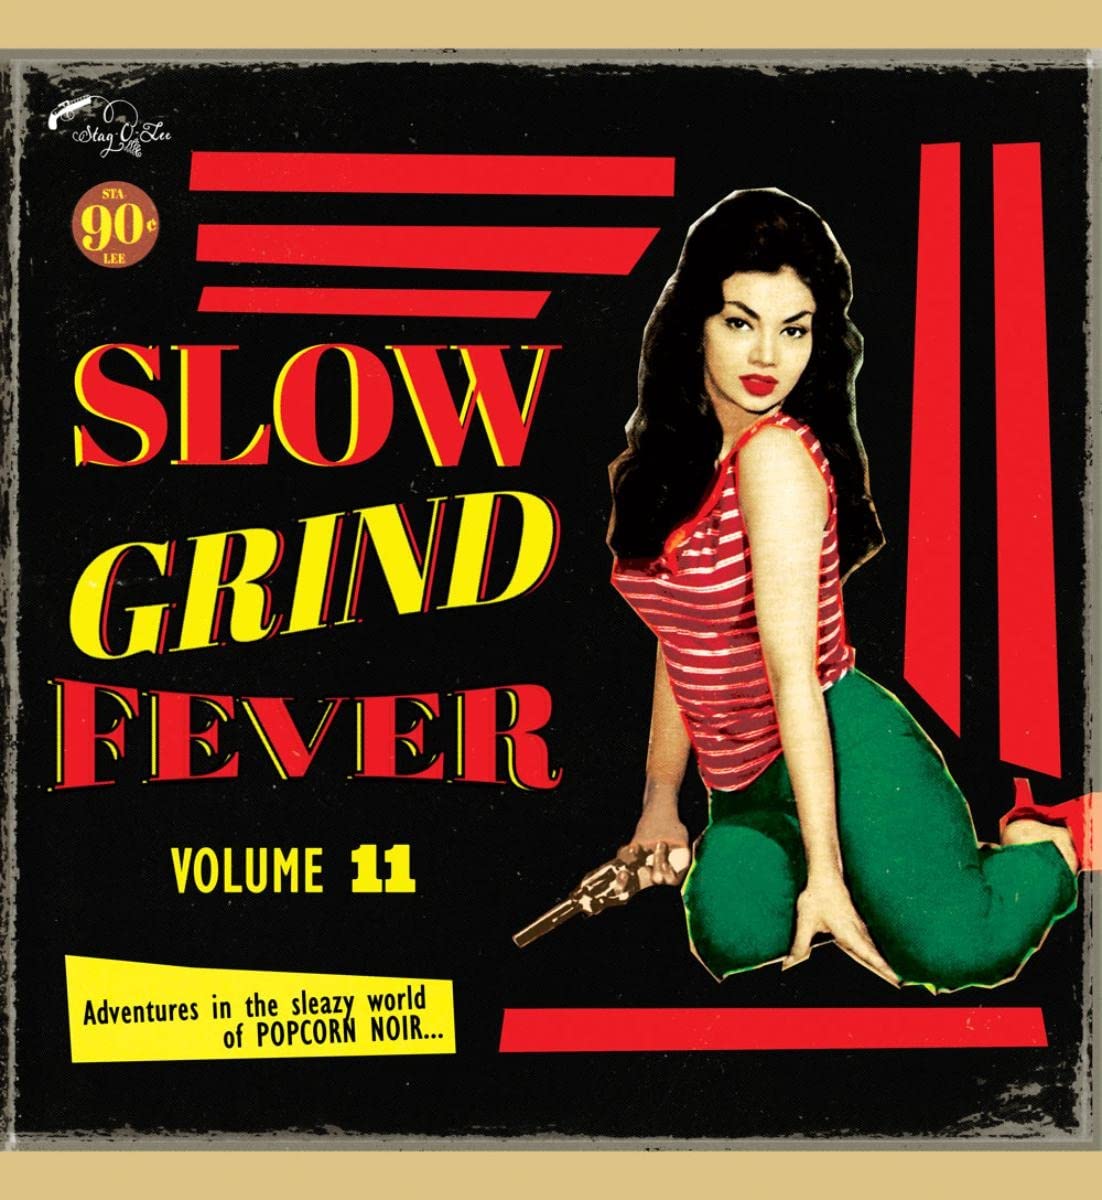 Slow Grind Fever 11 [Vinyl LP]